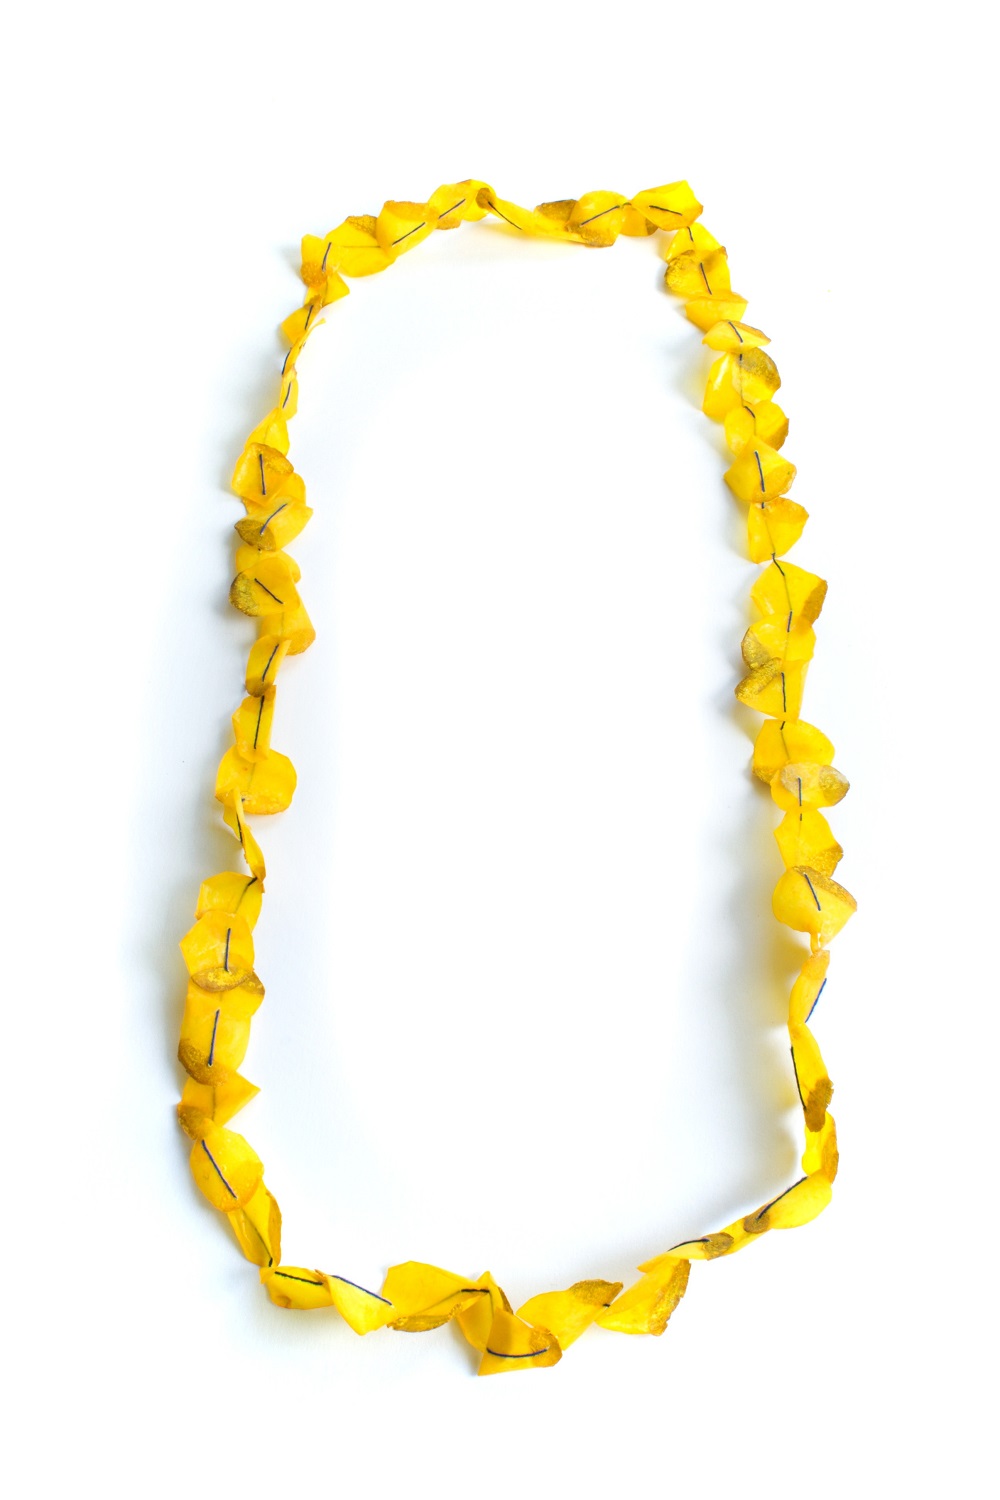 Goldfish necklace II